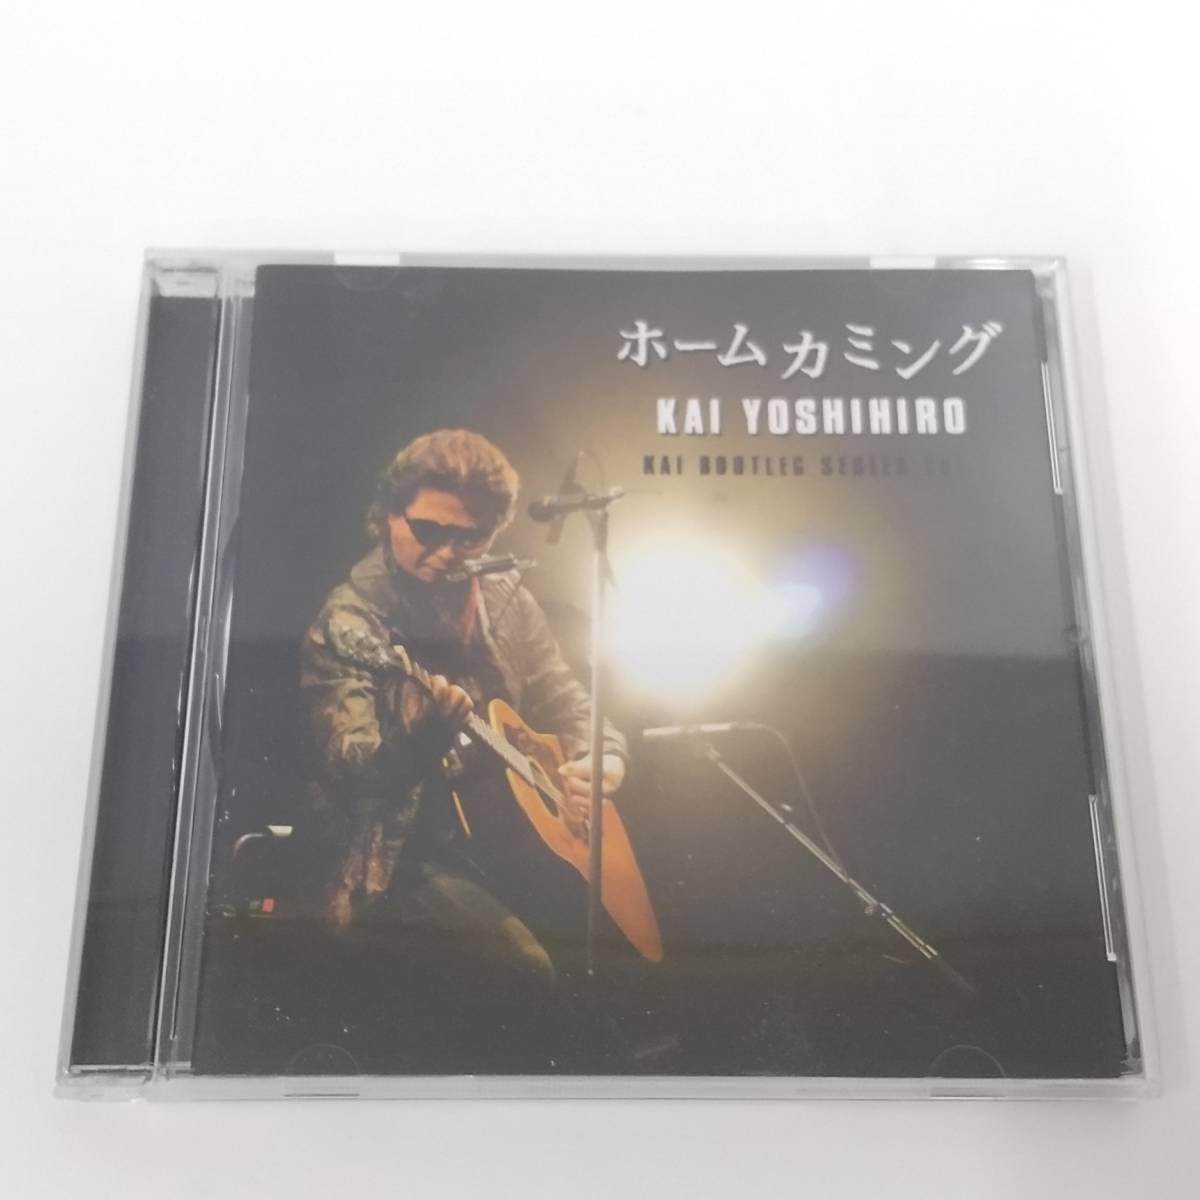 CD369[CD] Kai Yoshihiro / Home kamingBOOTREG SERIES Vol.1 рукав с футляром 